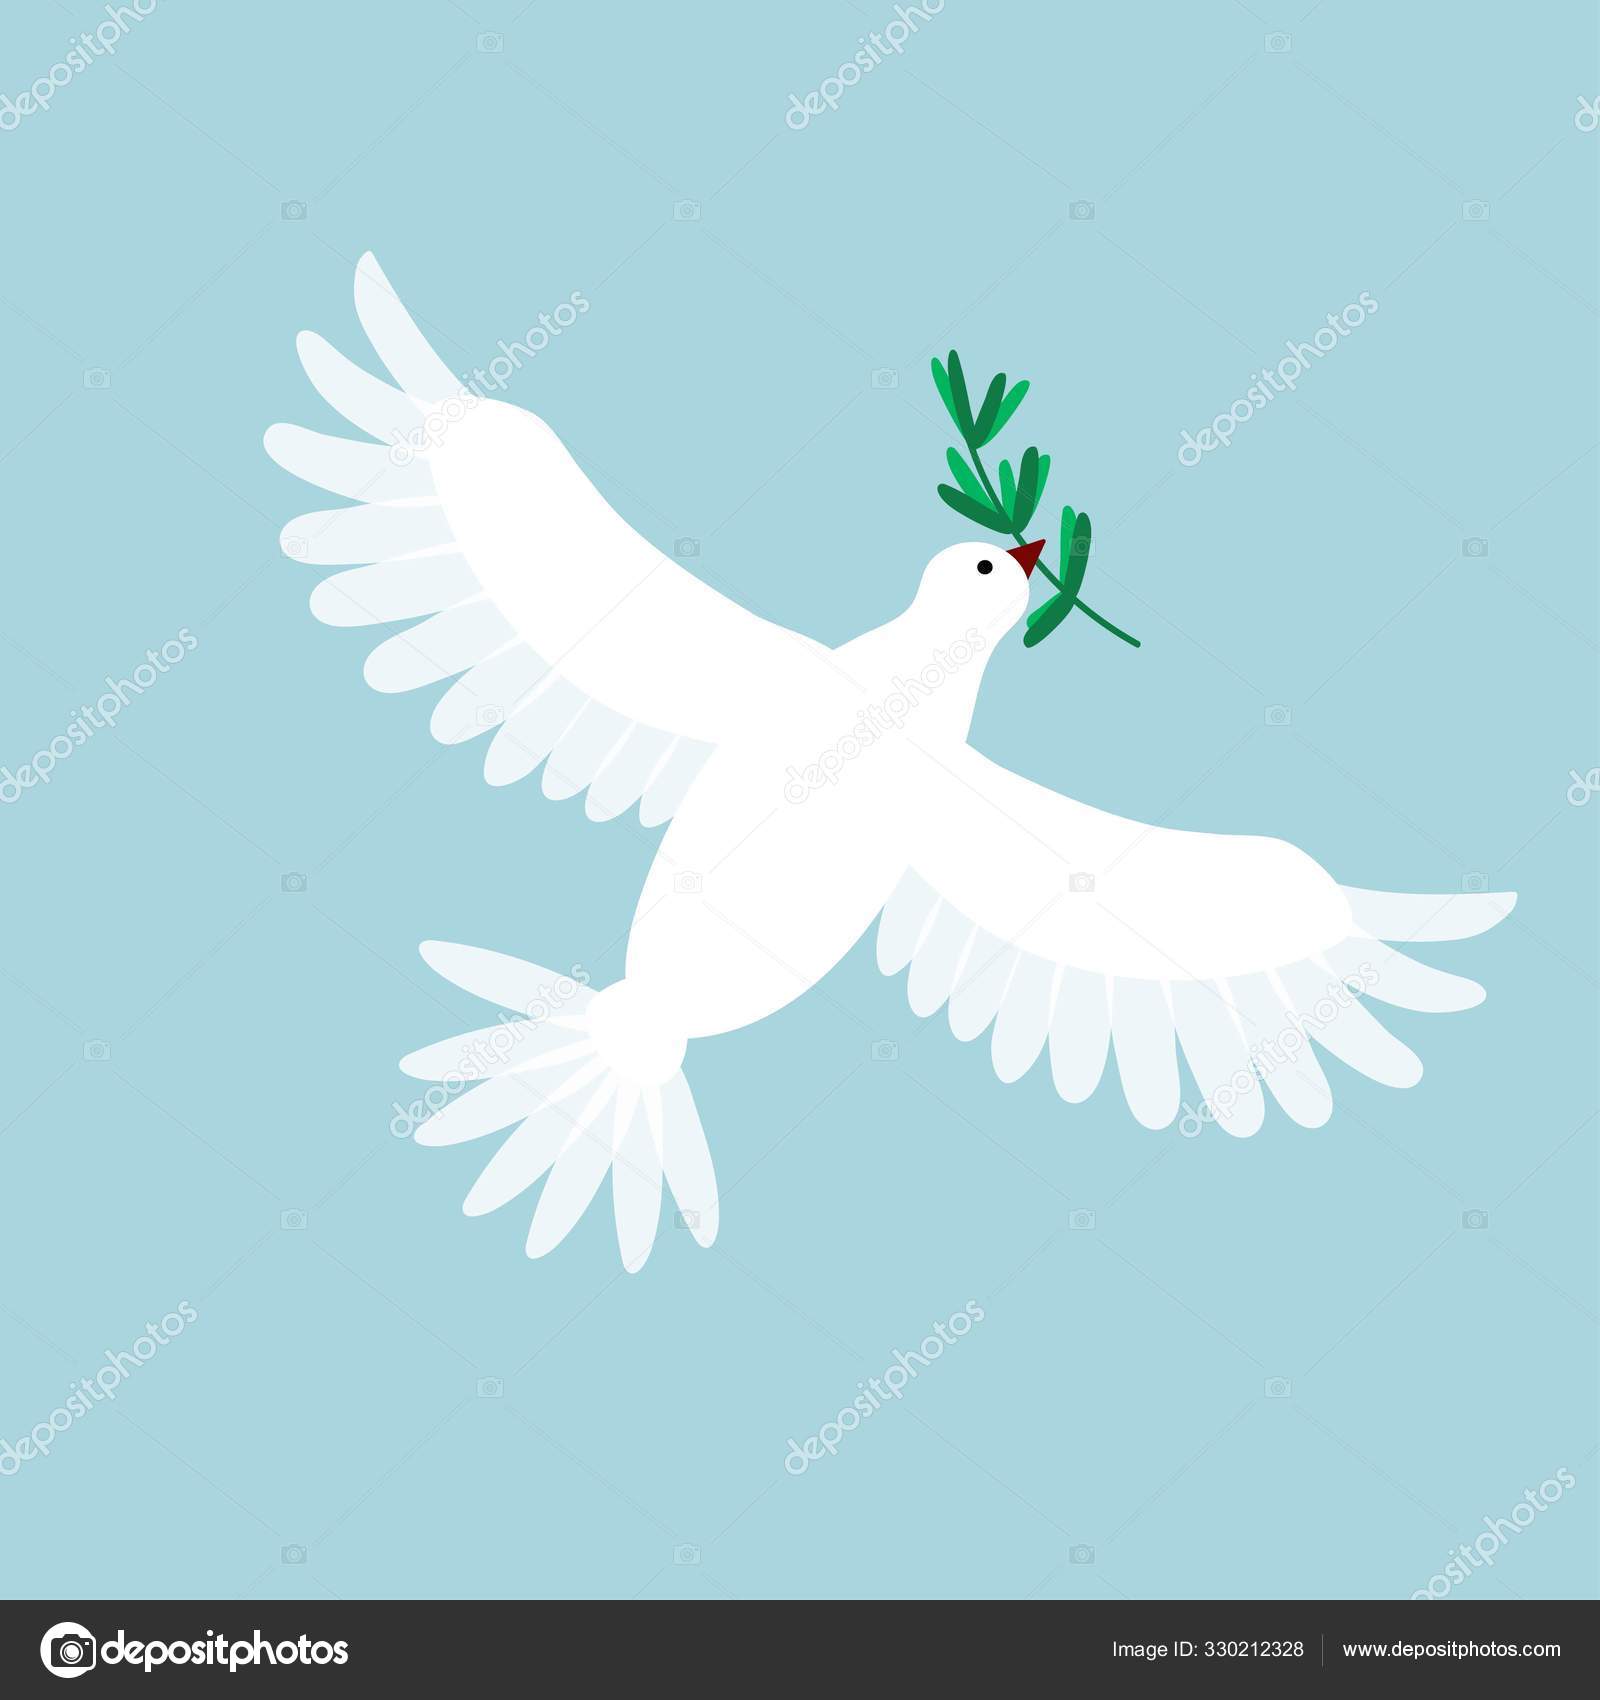 鸽子叼着橄榄枝的图片,世界和平鸽橄榄枝图片 - 伤感说说吧